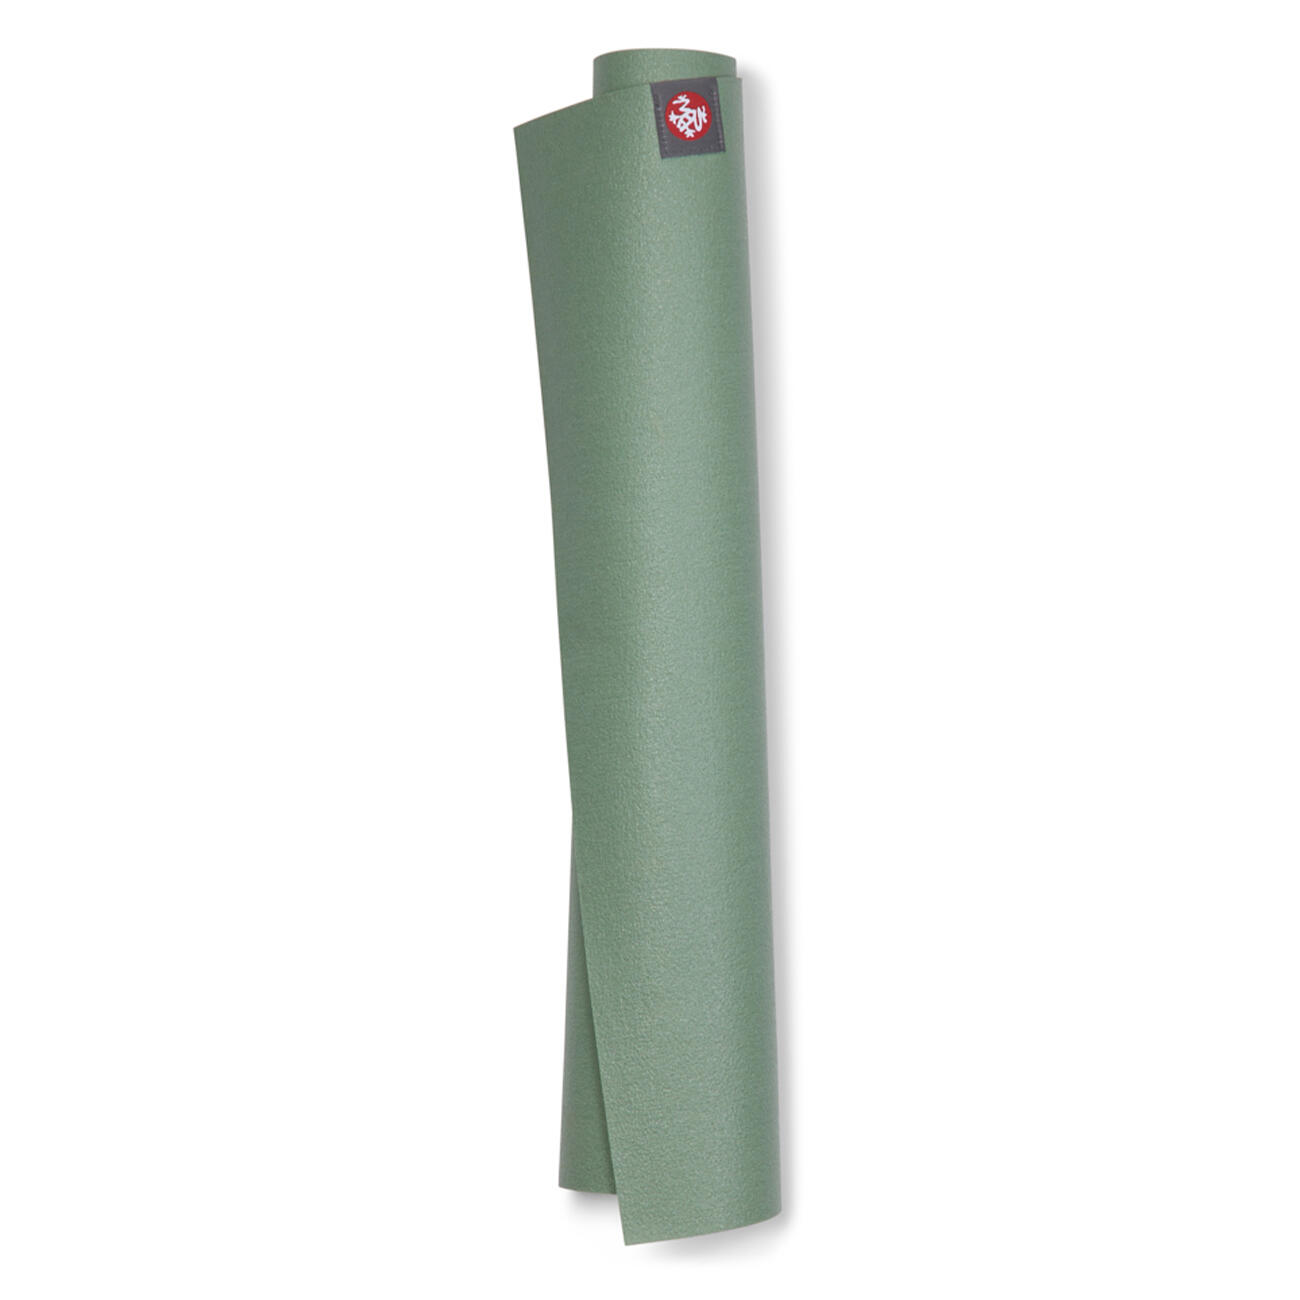 Manduka eKO SuperLite Travel Yoga Mat 1.5mm - Leaf Green 1/4